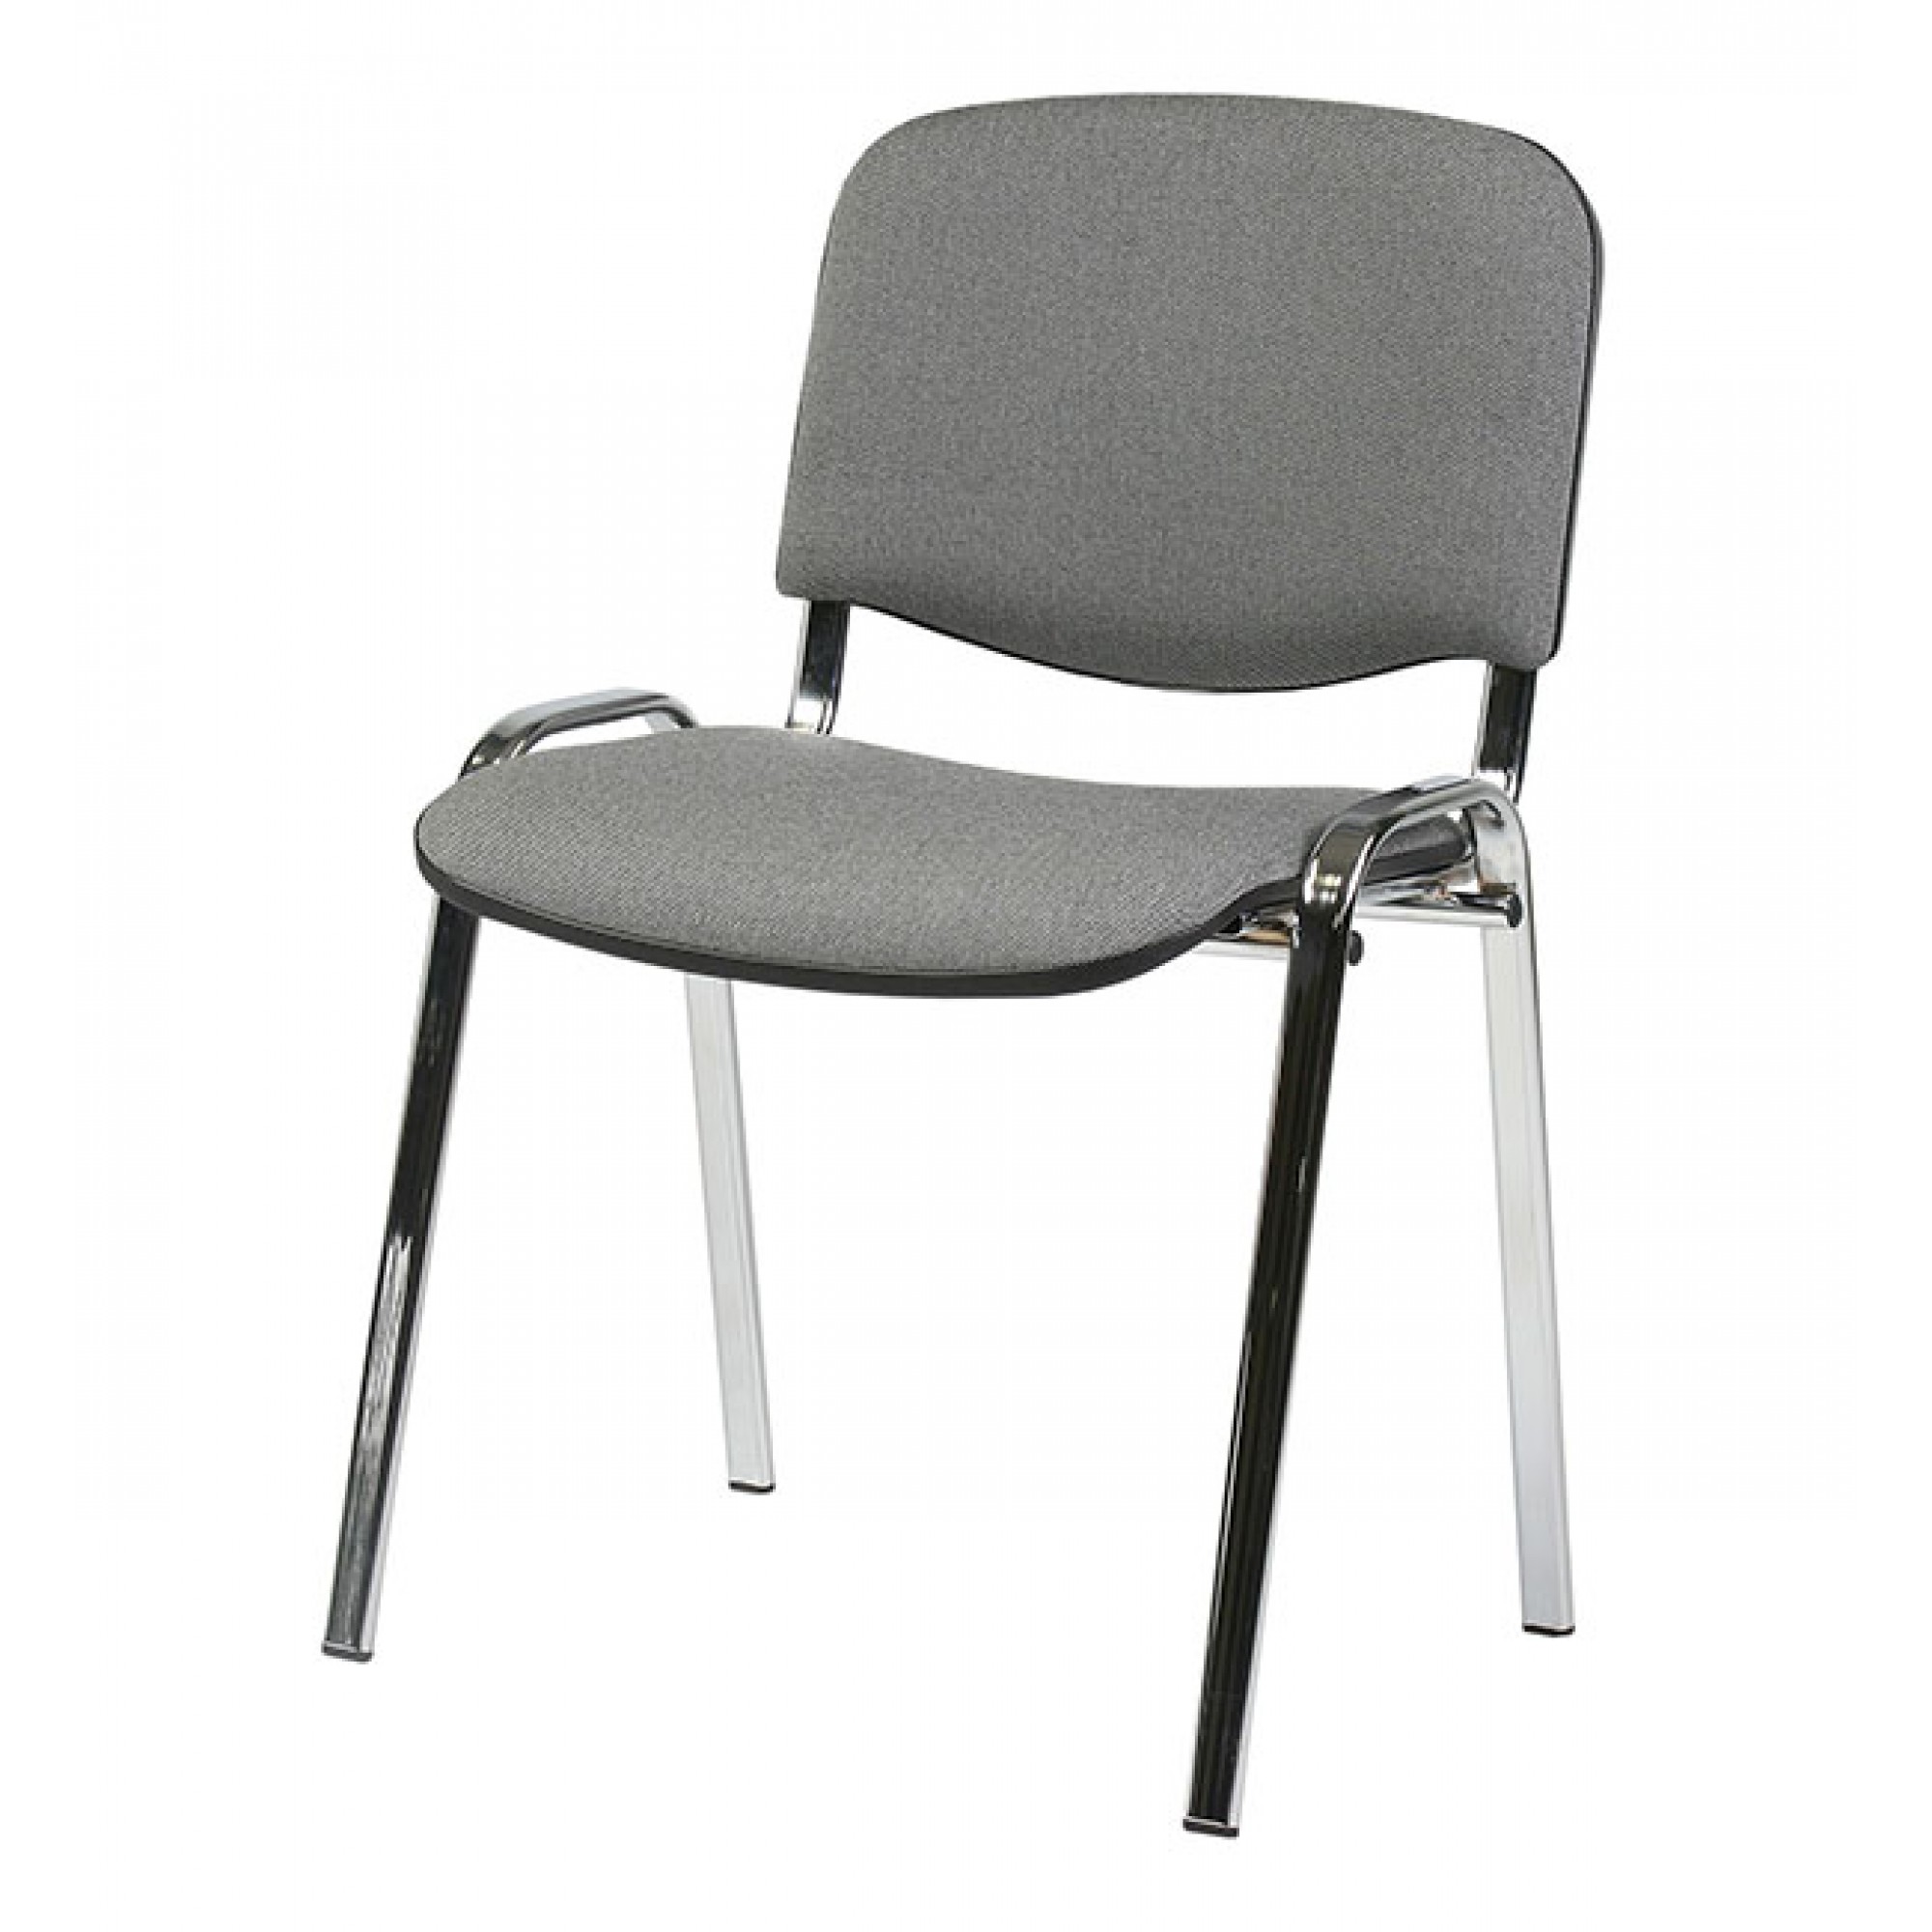 Офисные стулья минск. Изо, каркас хром / ткань c73 серый. Стул офисный изо ткань (в-14(ТК-1) чёрный). Стул изо (кожзам PV-1 черный, каркас черный). Стул офисный easy Chair изо с73.